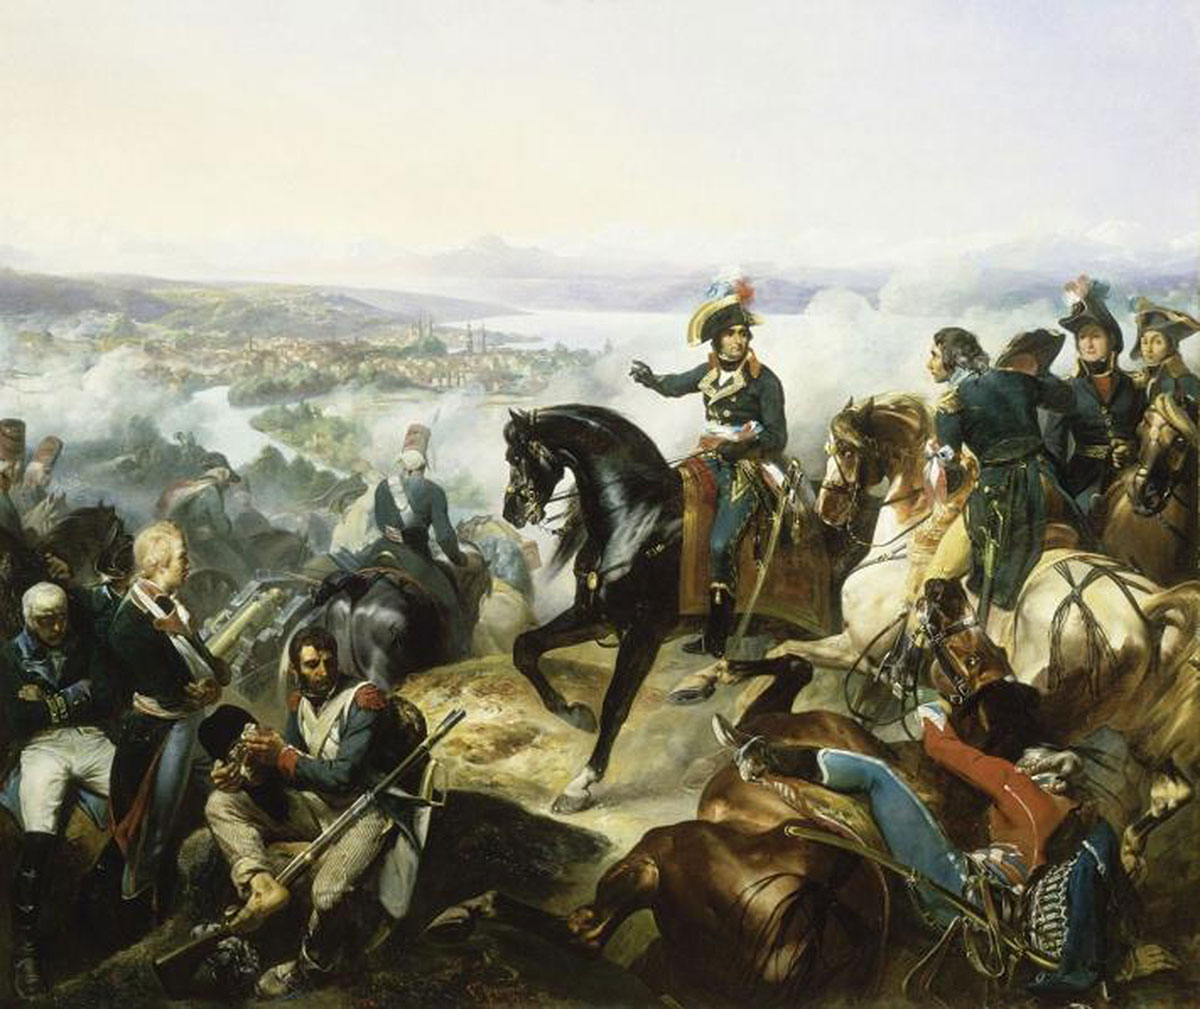 Gemälde von François Bouchot, das französische Truppen zeigt, die 1798 Zürich erobern